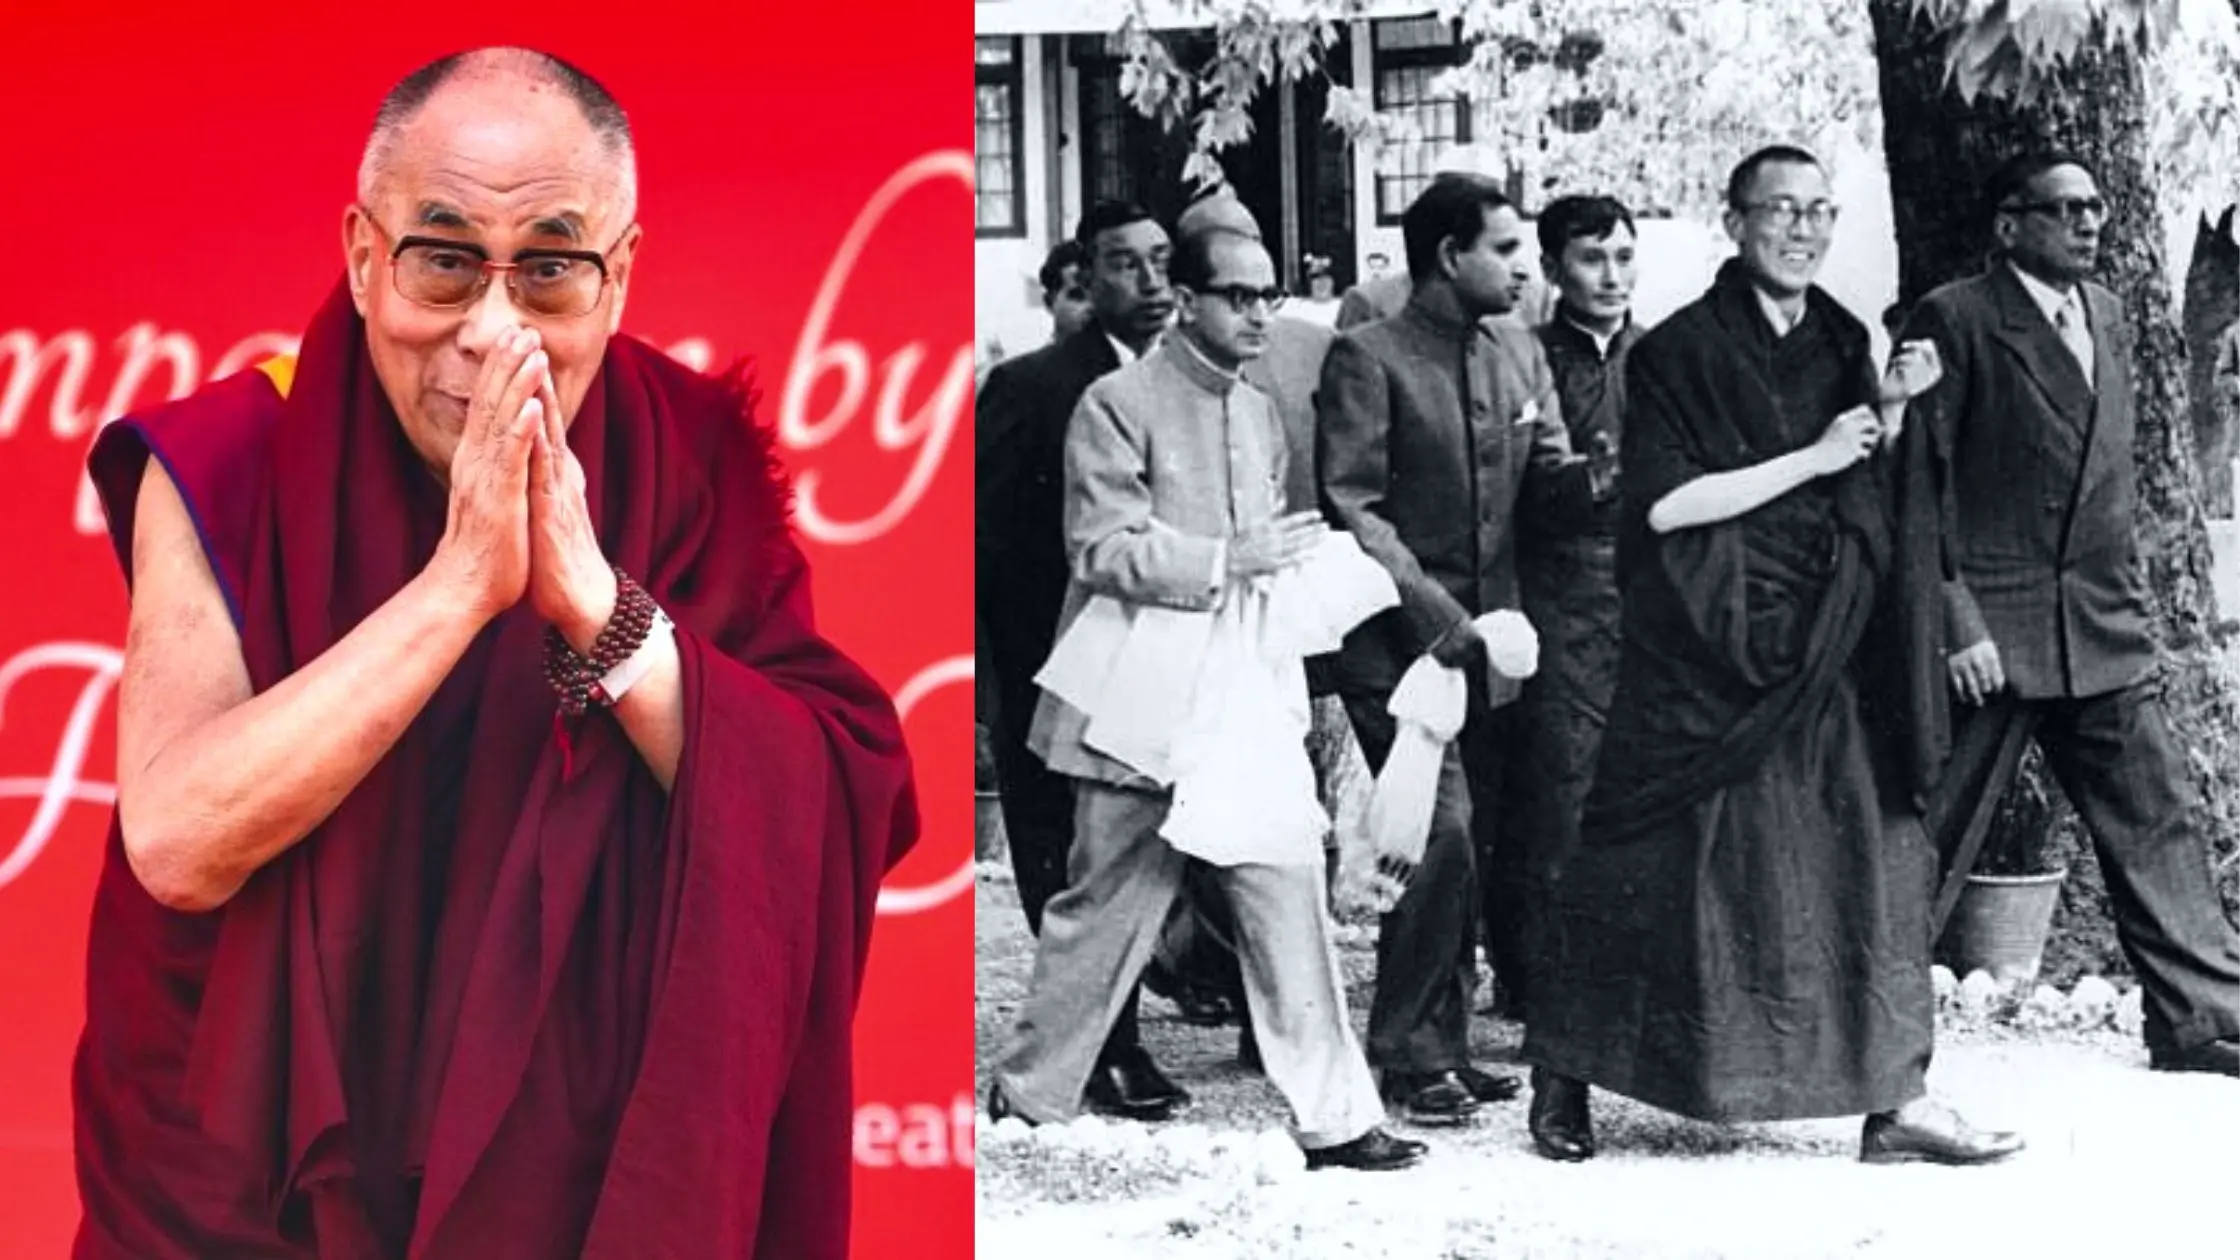 The spiritual leader Dalai Lama